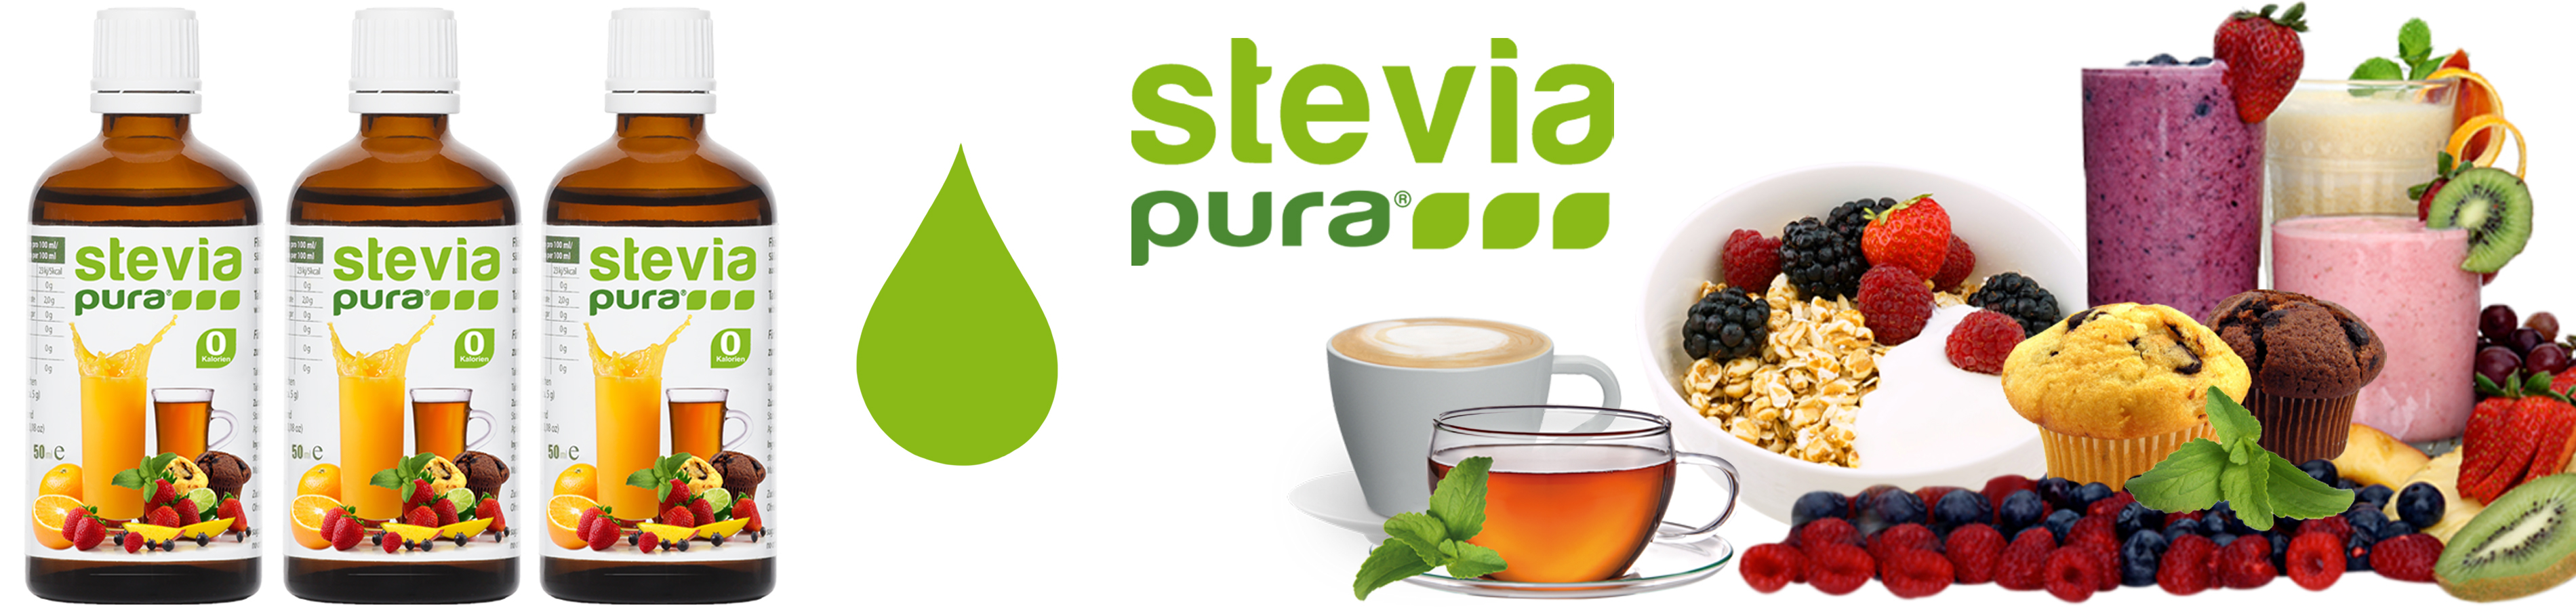 Stevia vloeibare zoetstof kopen stevia vloeibaar zoetstof...